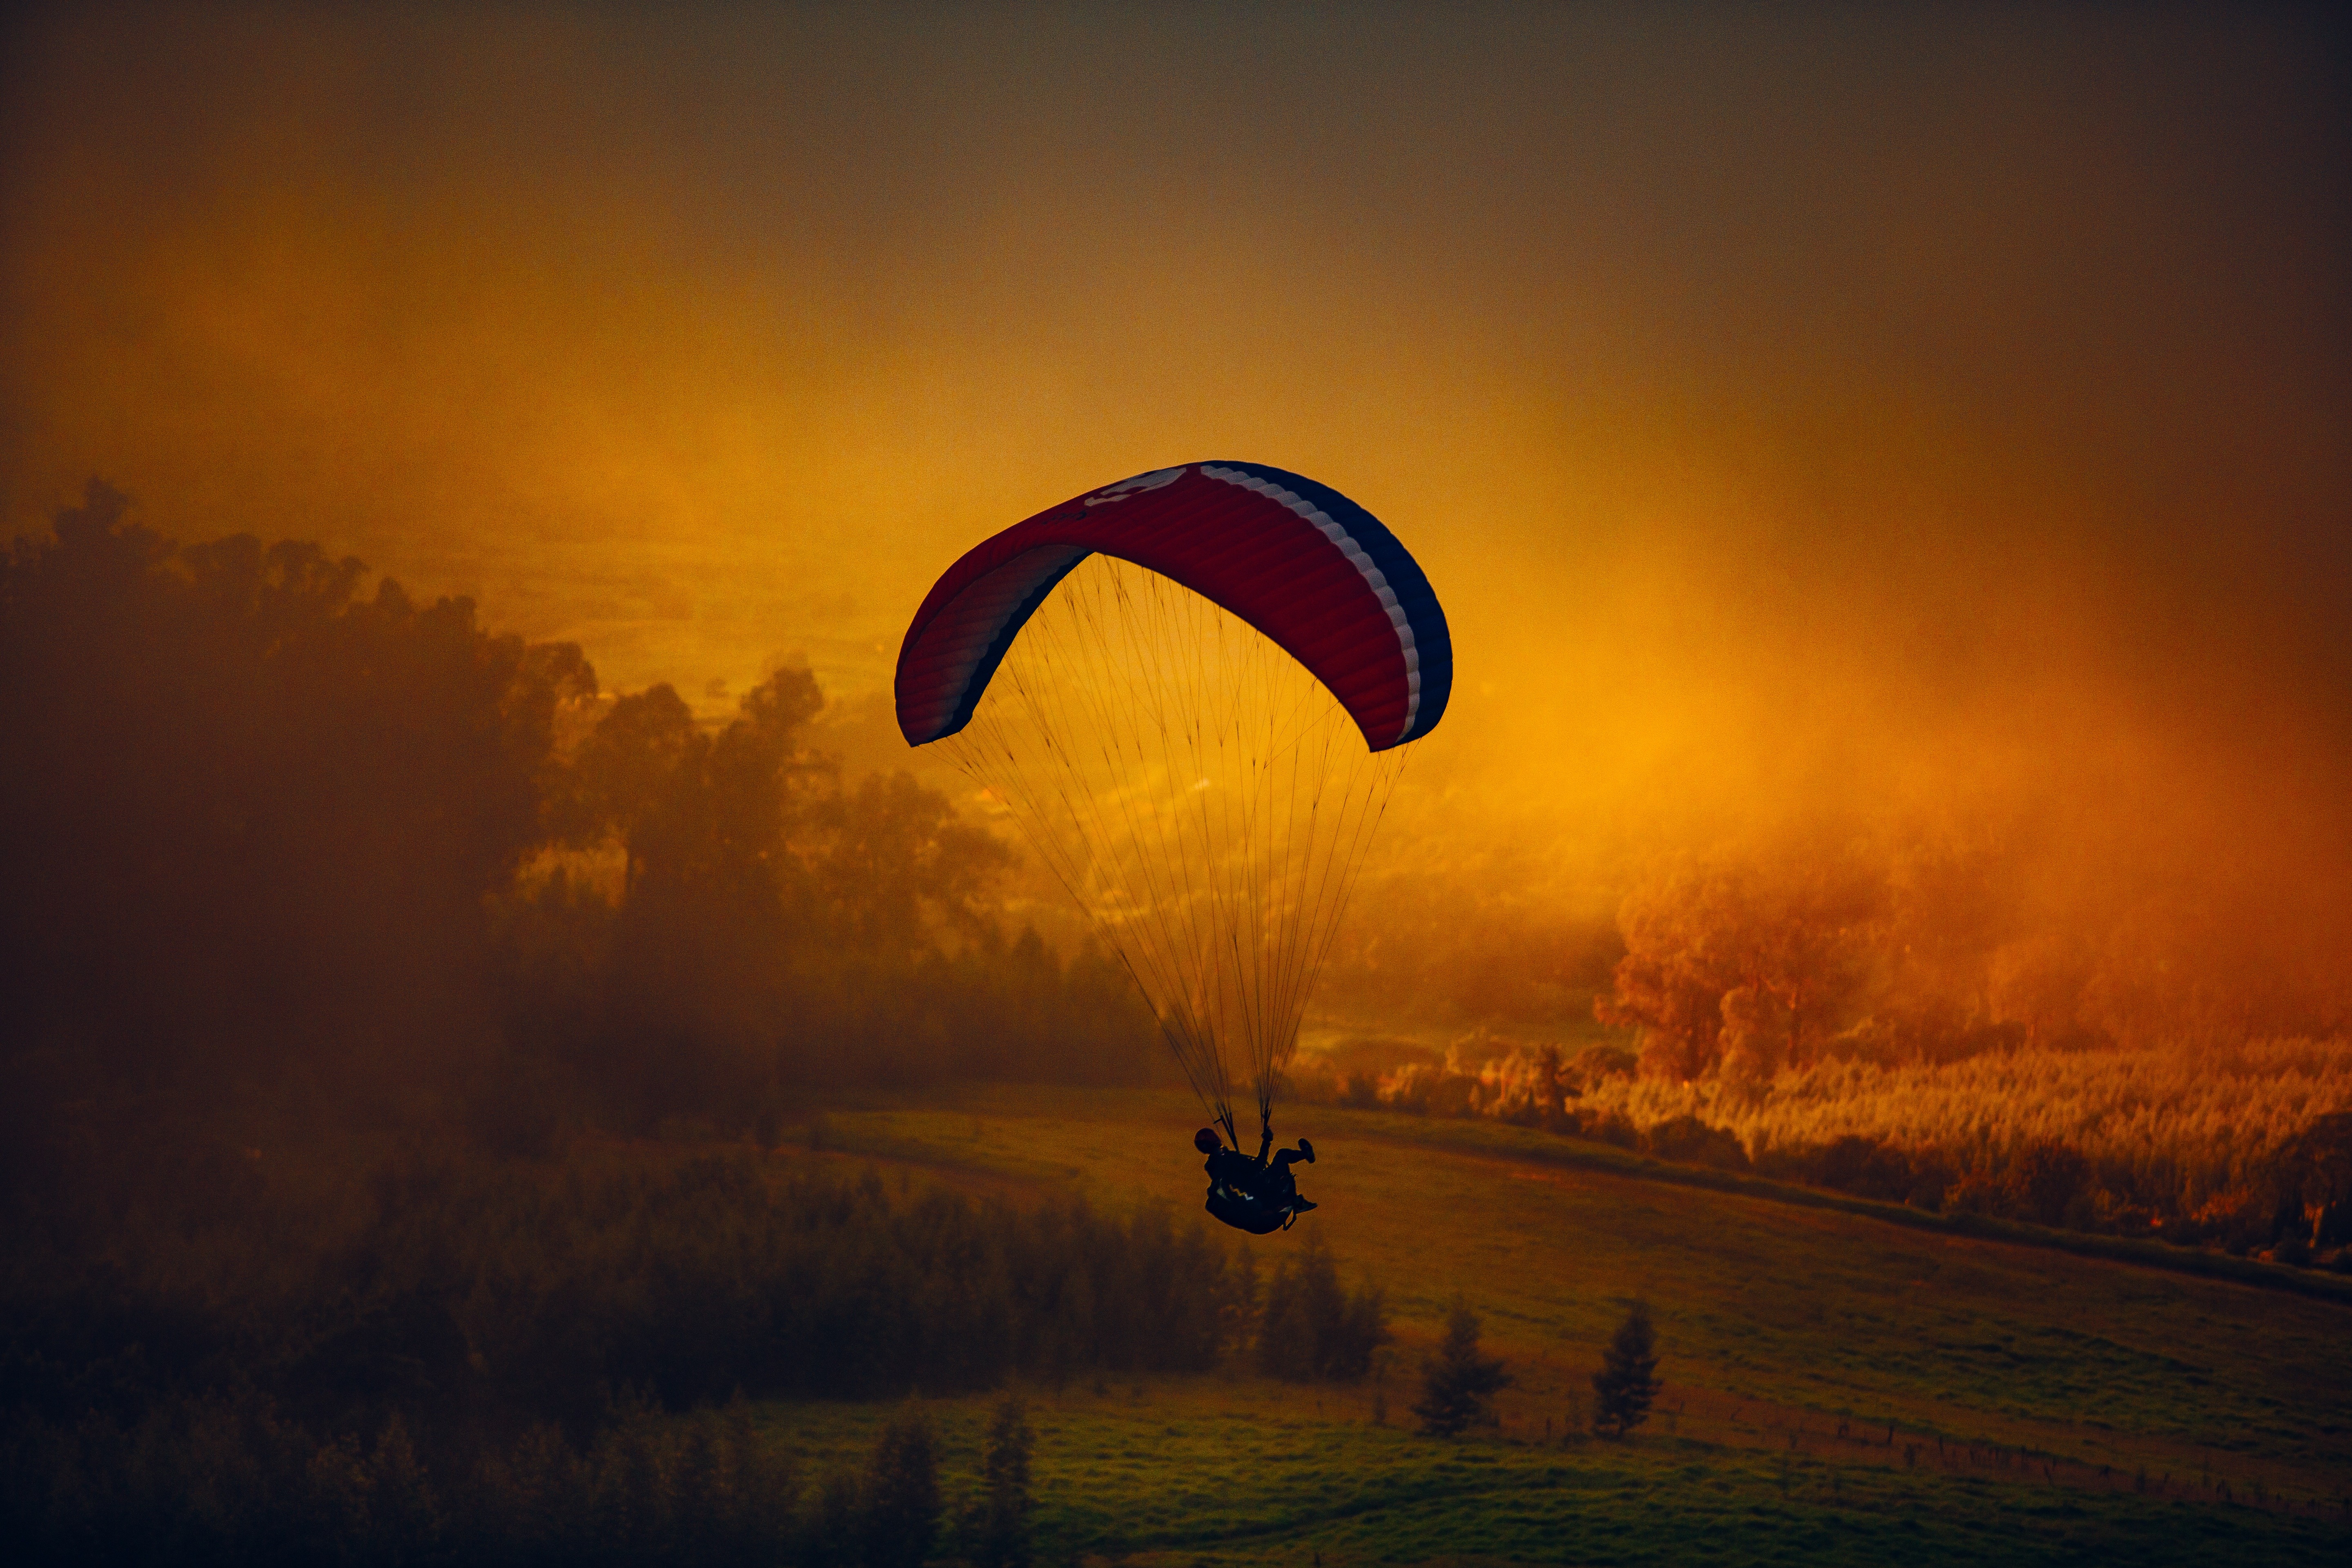 General 5760x3840 nature parachutes paragliding landscape sky orange sky